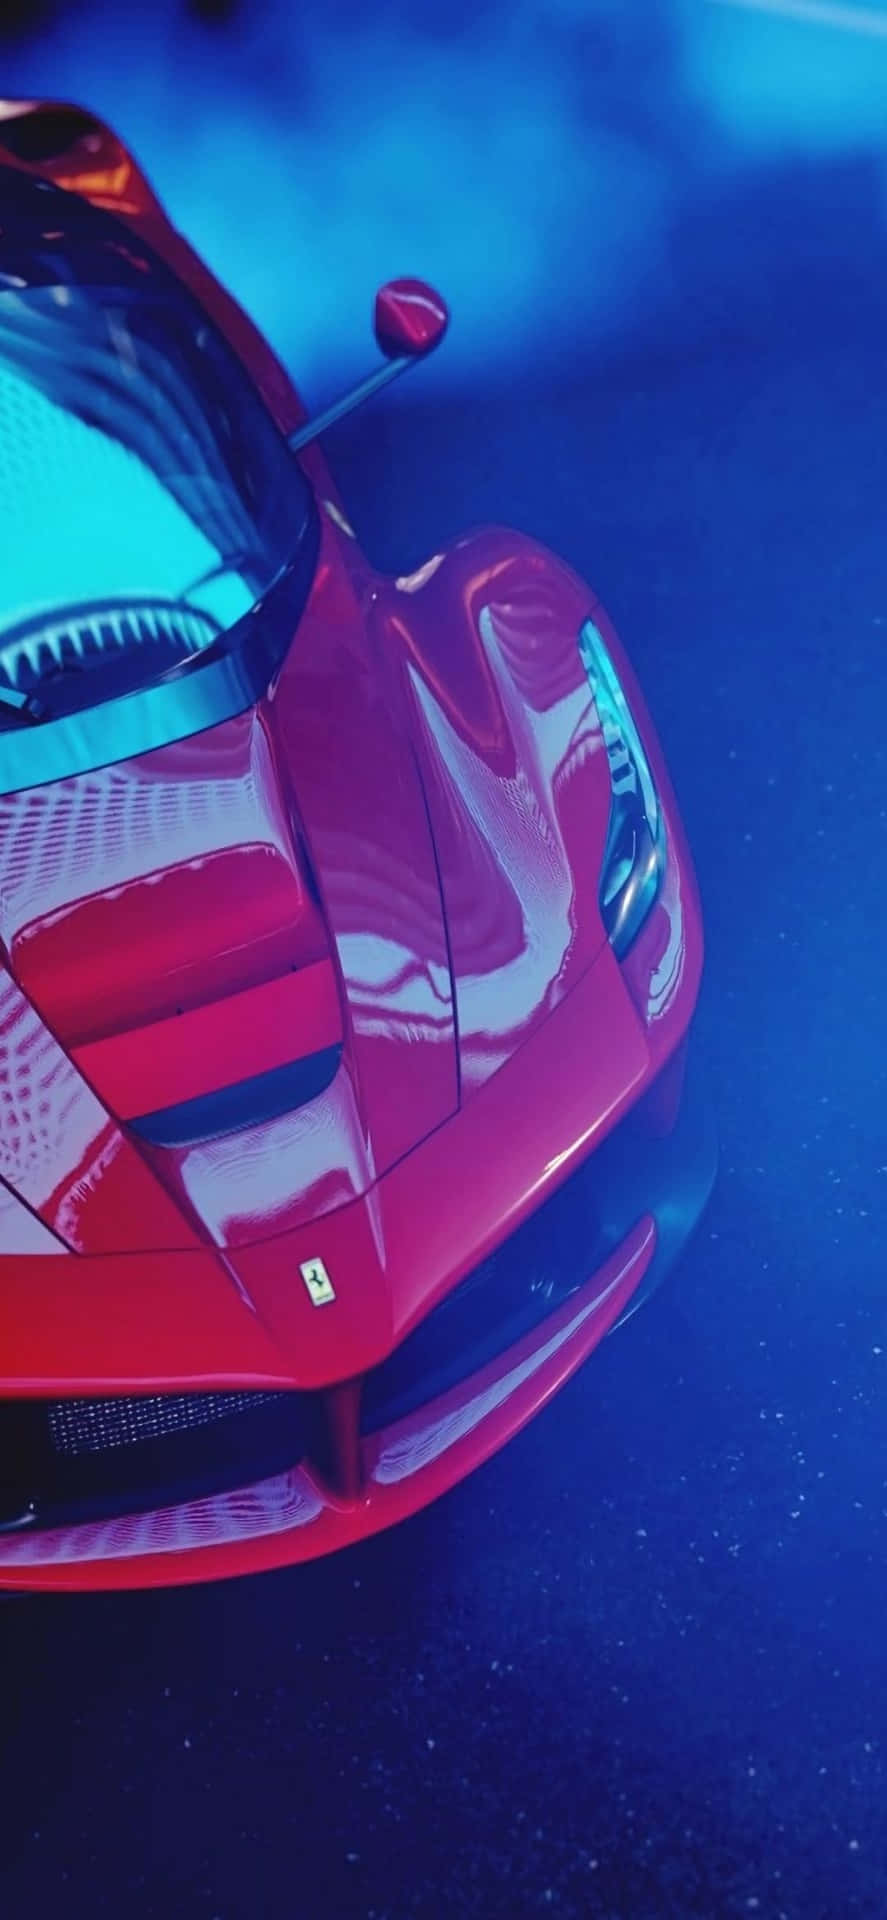 Sfondoper Iphone Xs Max: Ferrari Rosso Lucido Coperta Da Fumo Blu.